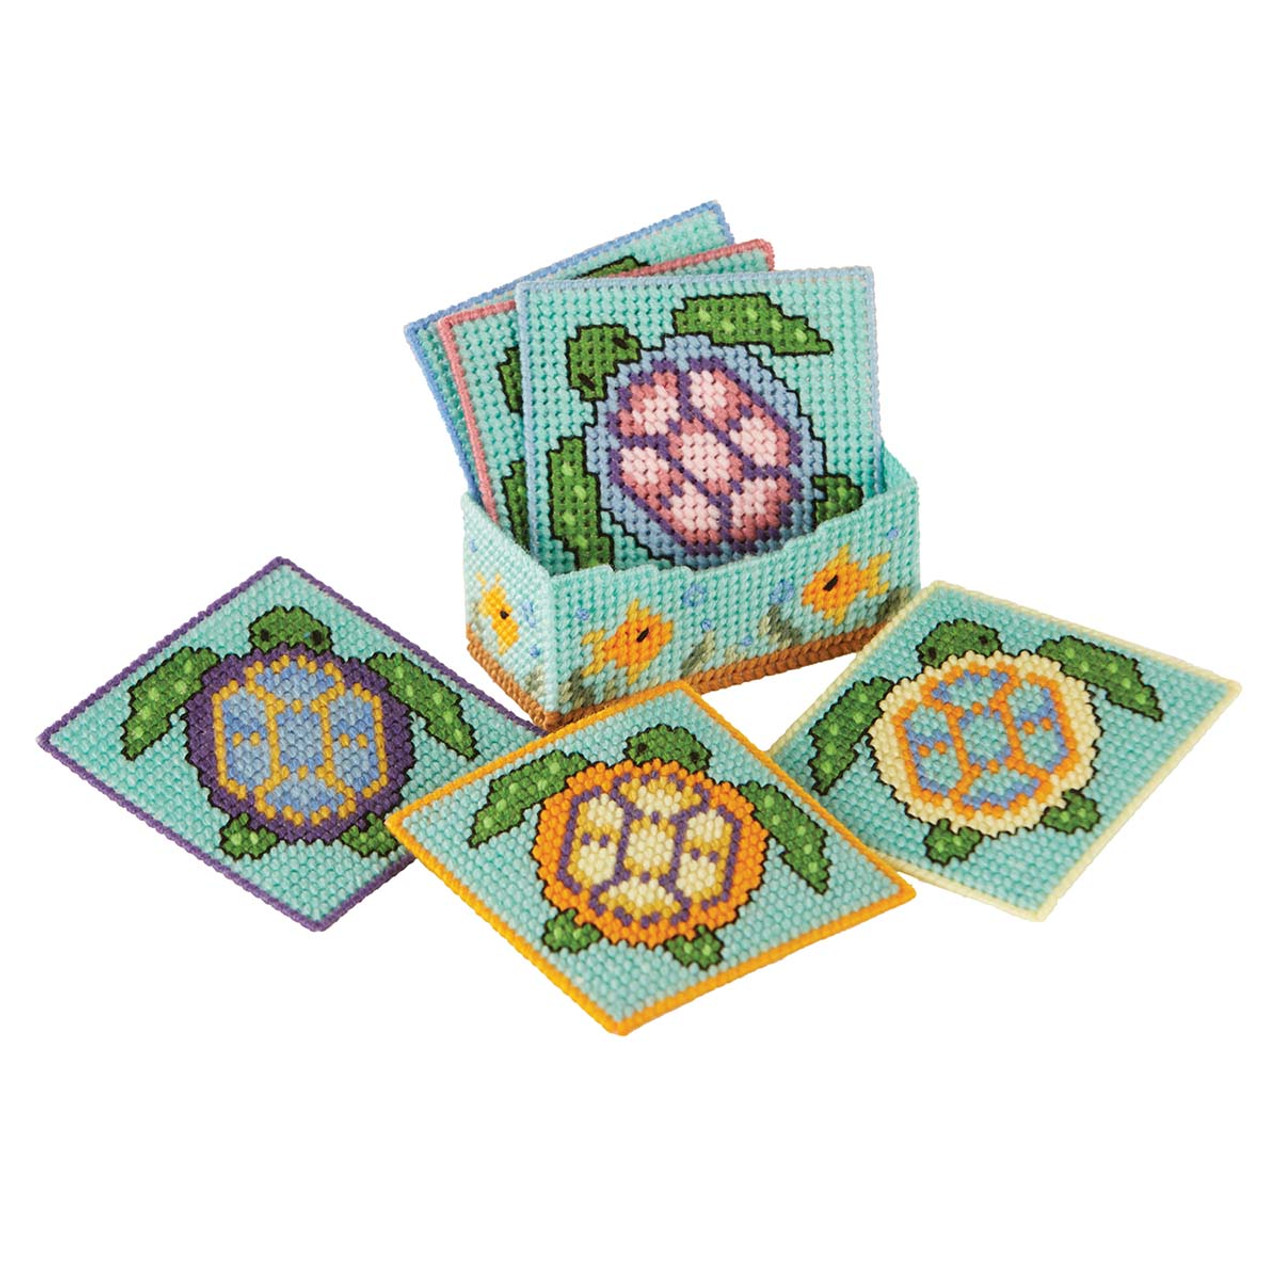 Herrschners Sea Turtles Coasters Plastic Canvas Kit